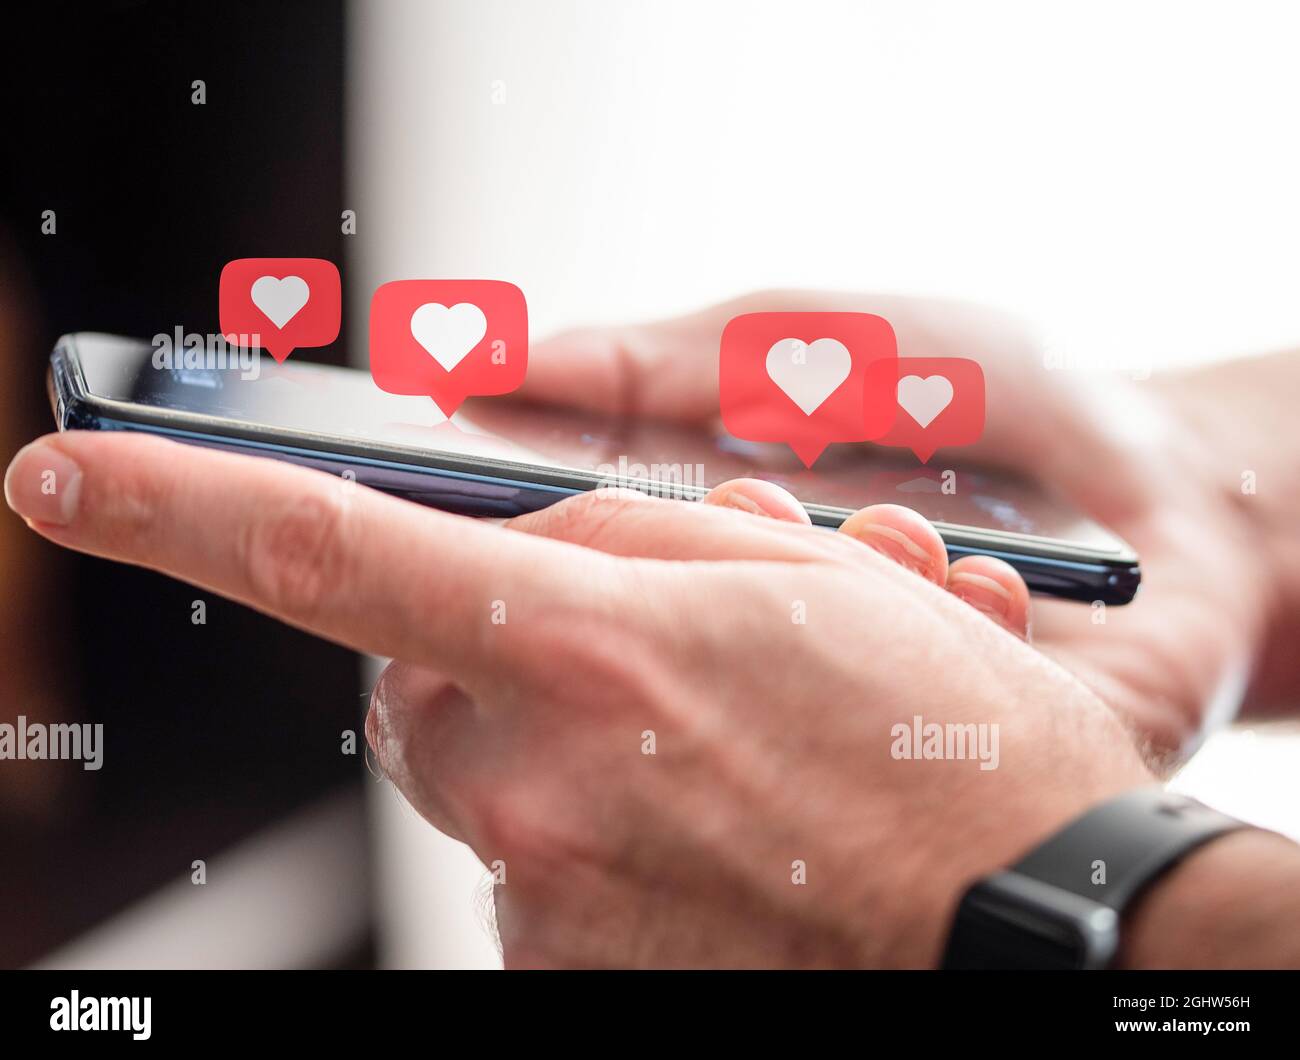 persona che ama i social media, primo piano delle mani con smartphone con icone a forma di cuore sopra Foto Stock